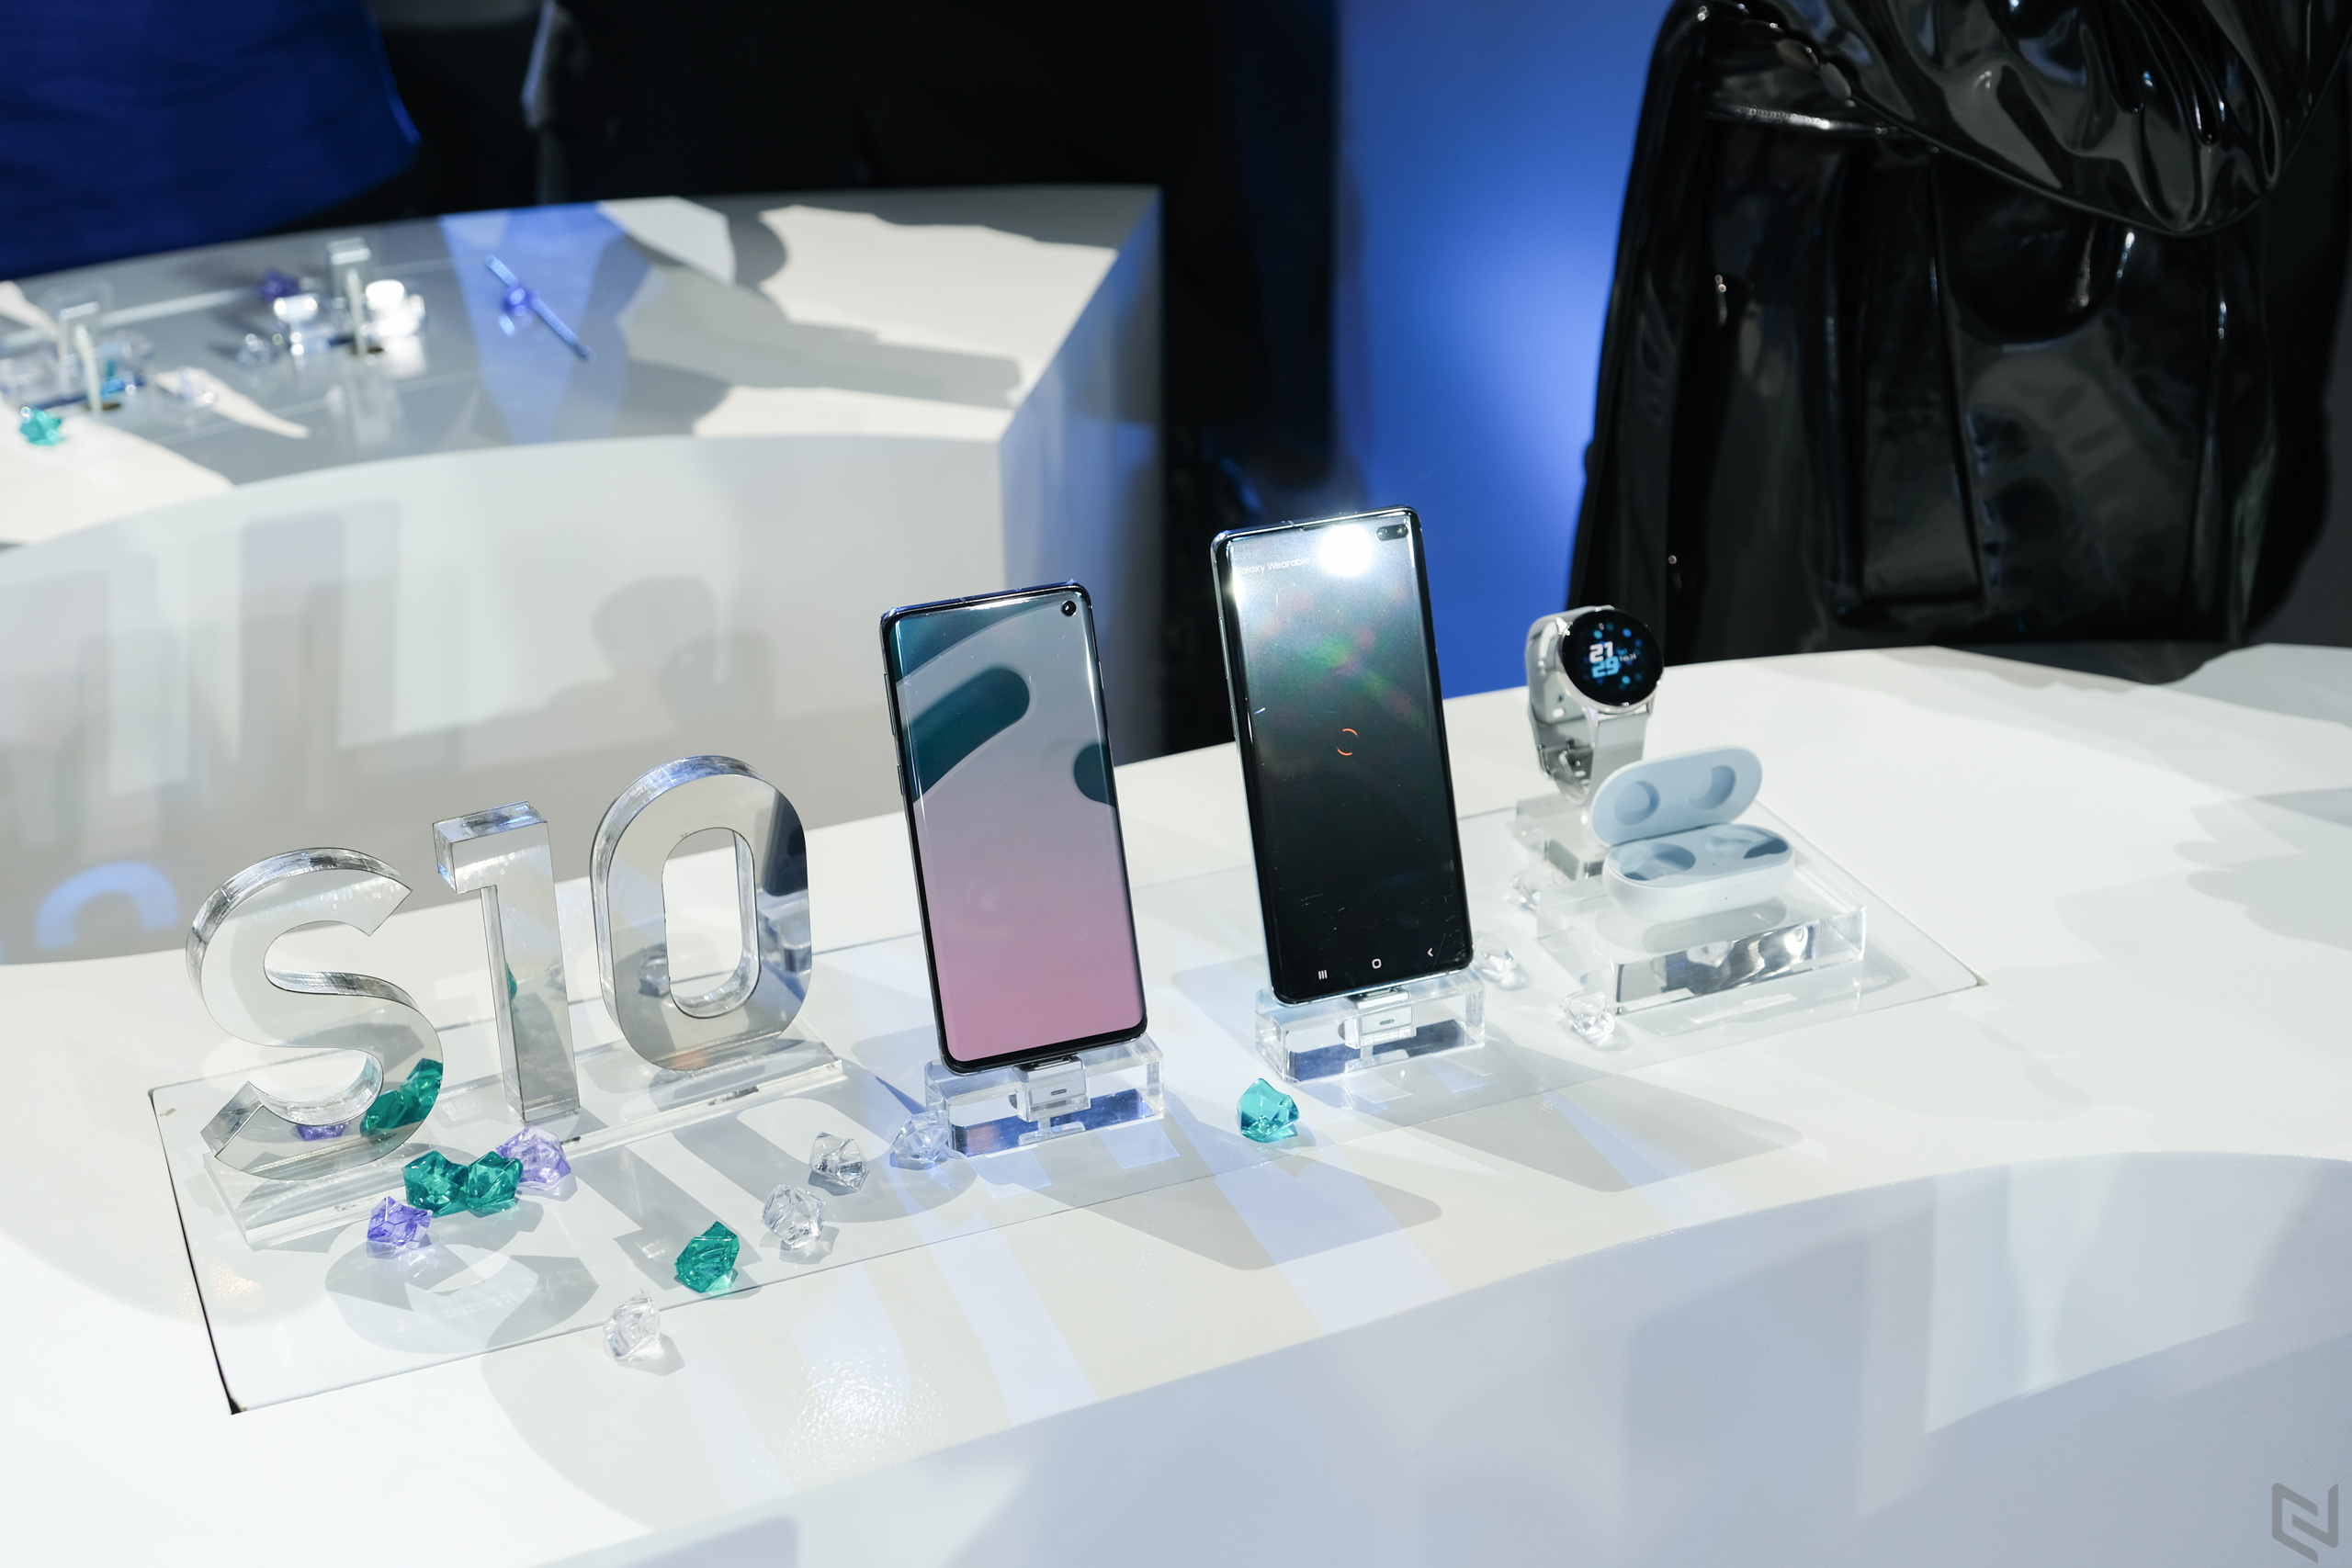 FPT Shop tặng bộ quà 6 triệu đồng cho khách đặt trước Galaxy S10 | S10+ kèm nhiều khuyến mãi khác